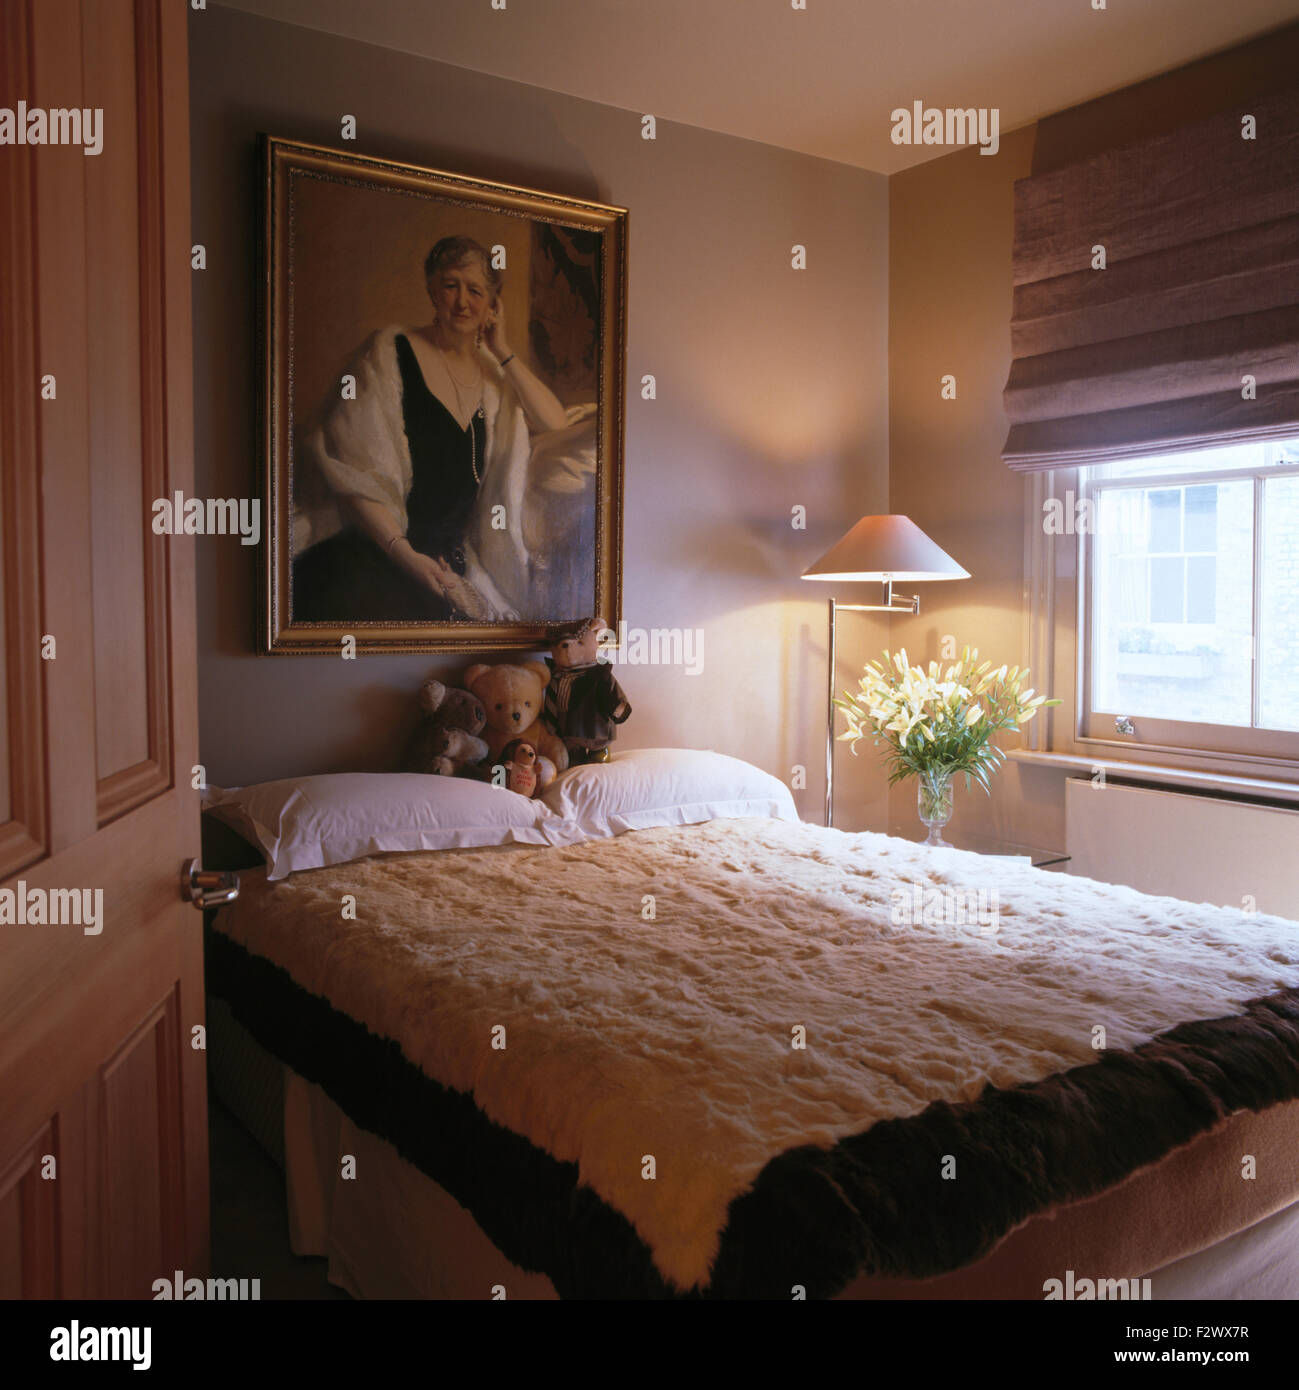 Kunstfell eingefasst weißes Fell Abdeckung auf blass grau Wohnung Schlafzimmer-Bett mit einem grauen Rollo am Fenster Stockfoto